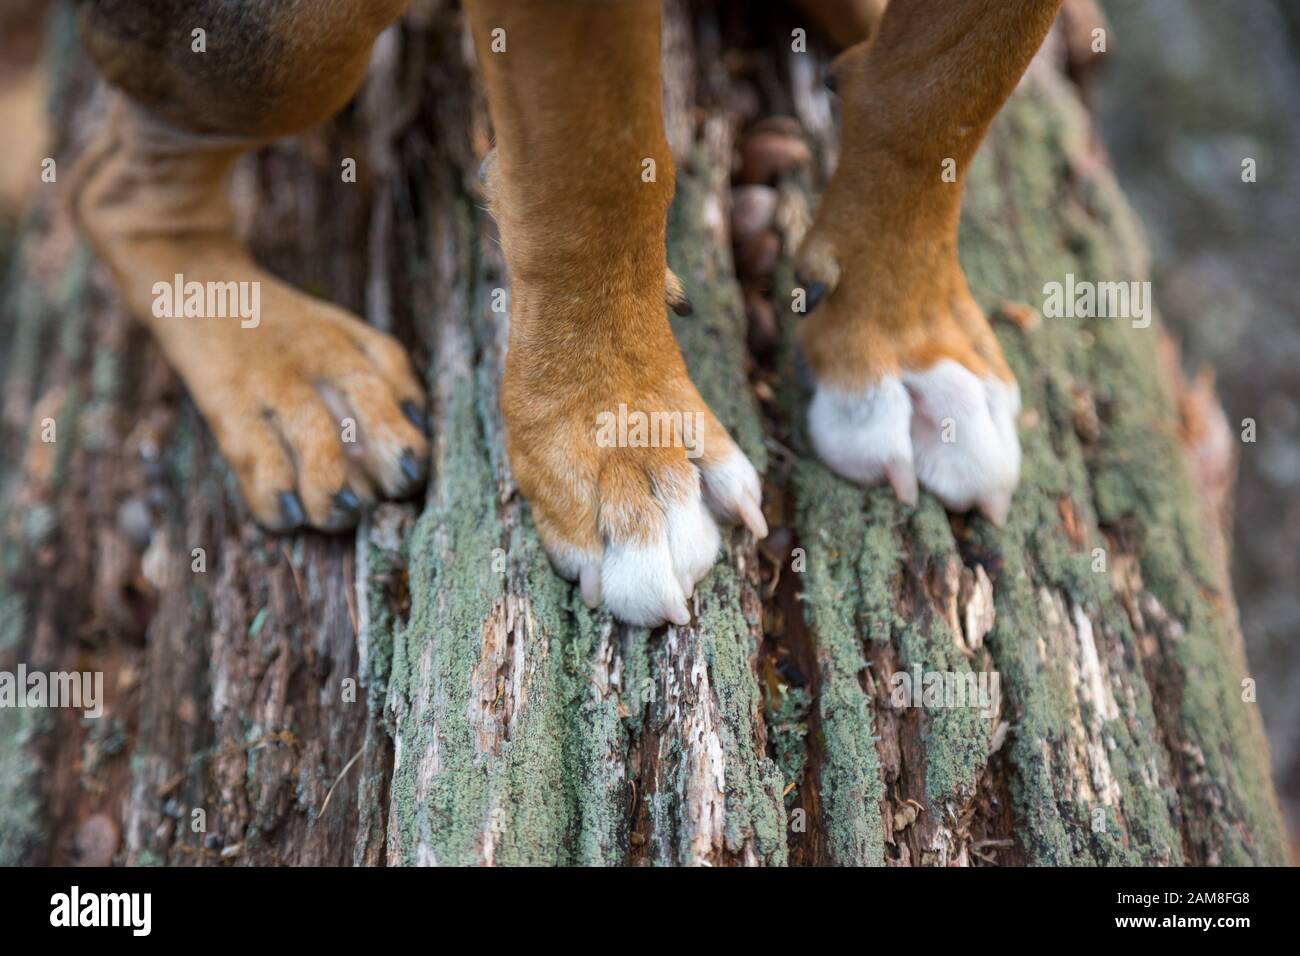 A dog waits on a log while hiking. Stock Photo